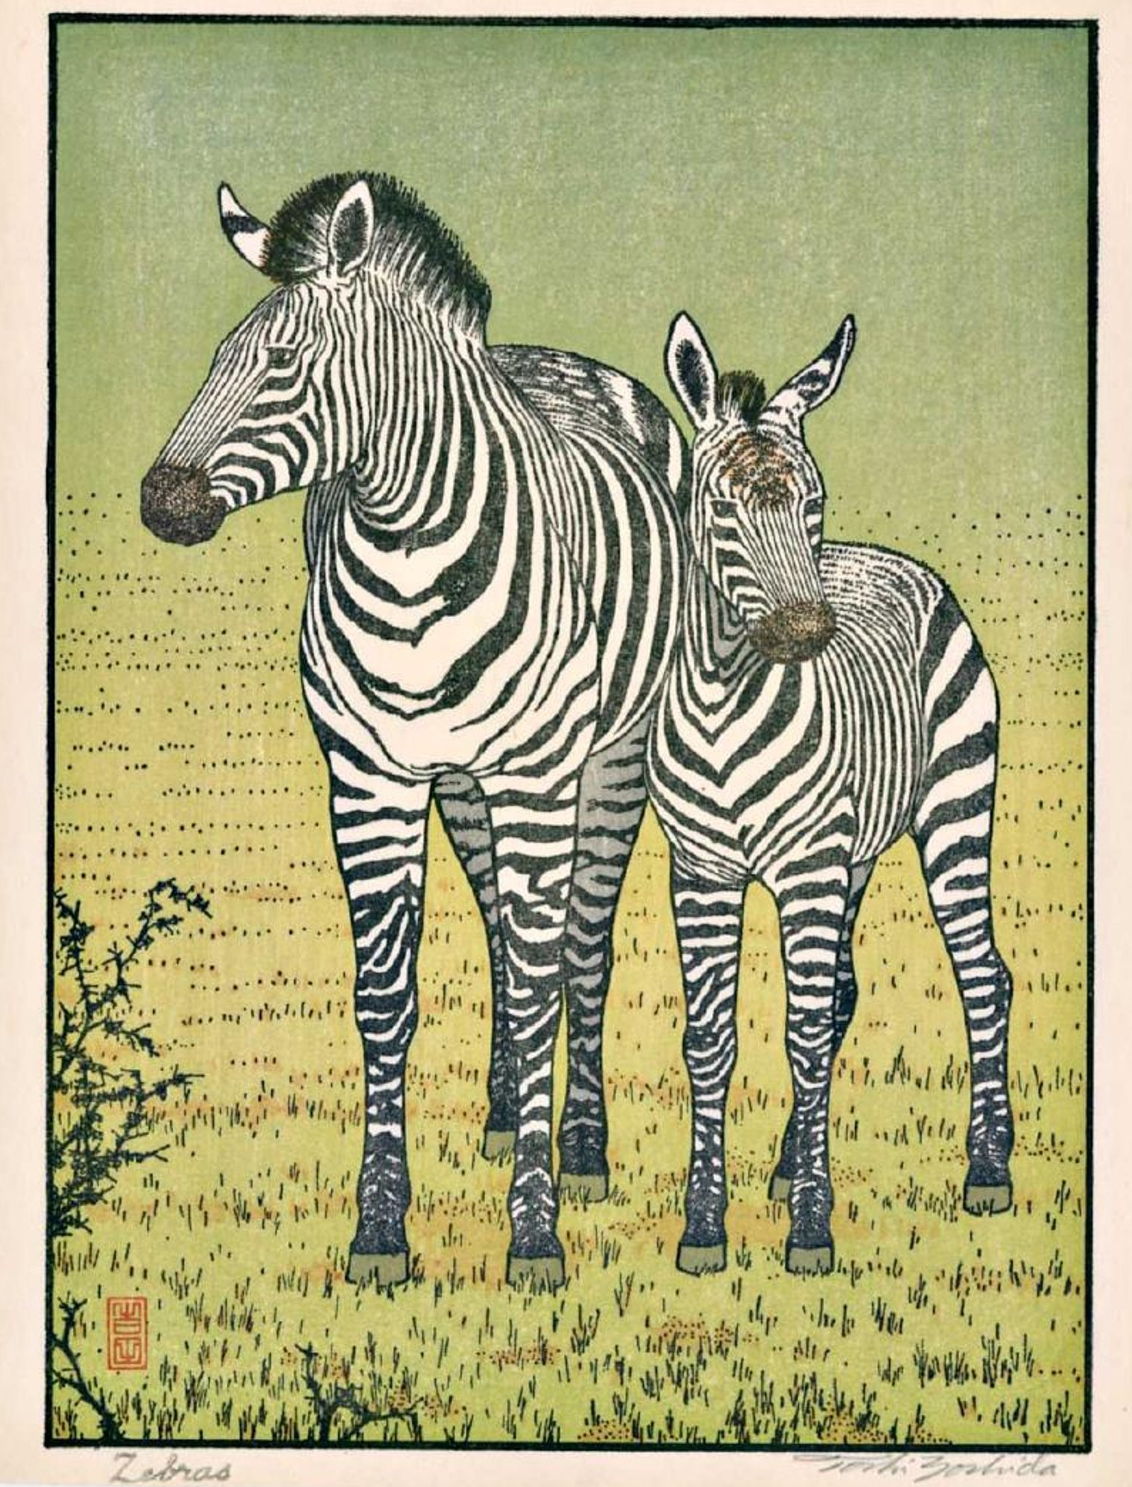 Toshi Yoshida “Zebras” 1987 woodblock print